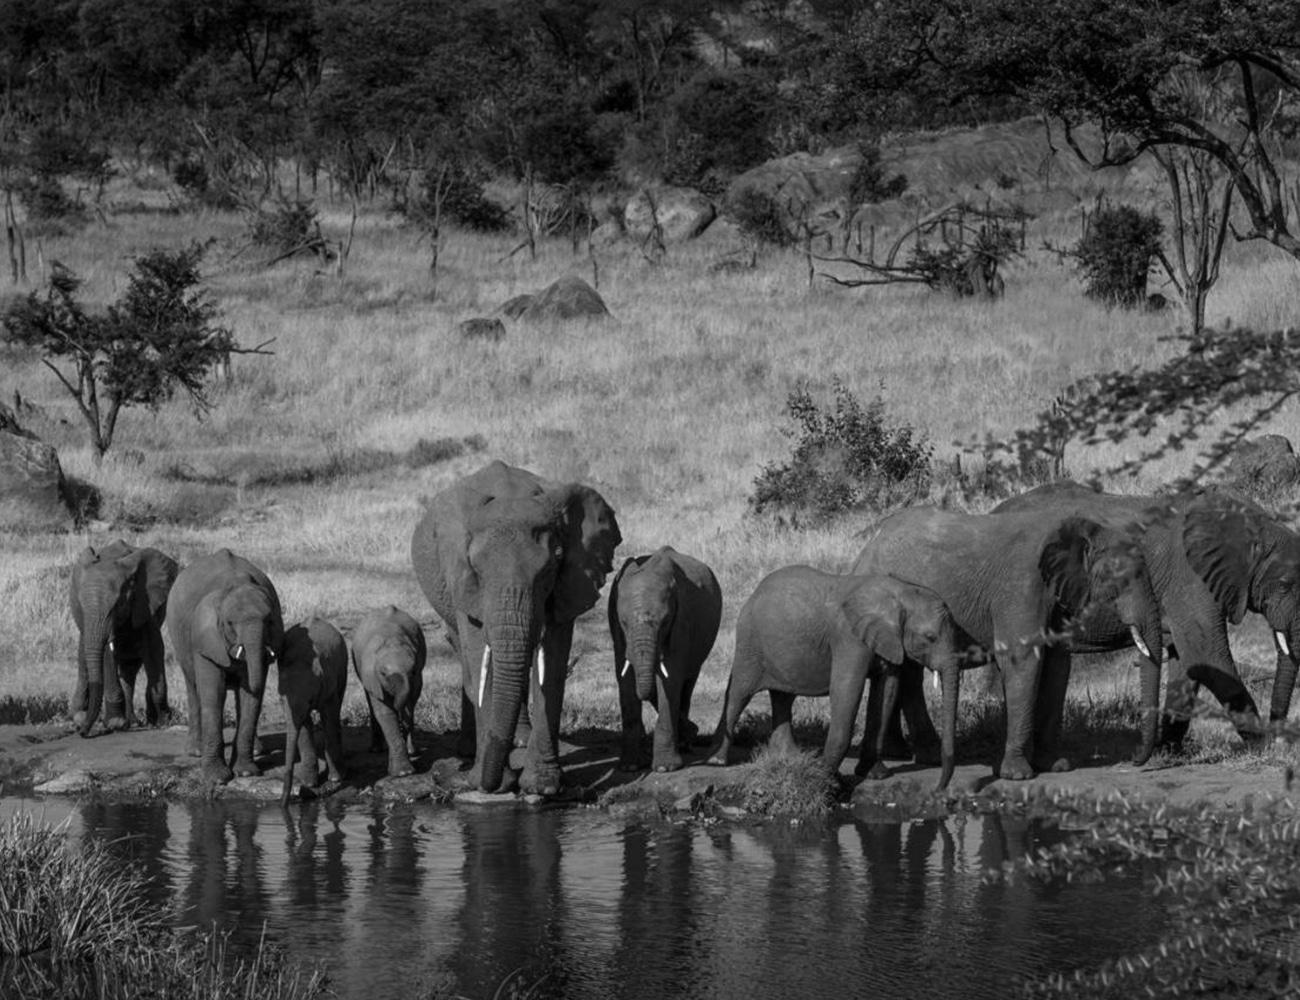 Animals at the Serengeti National Park